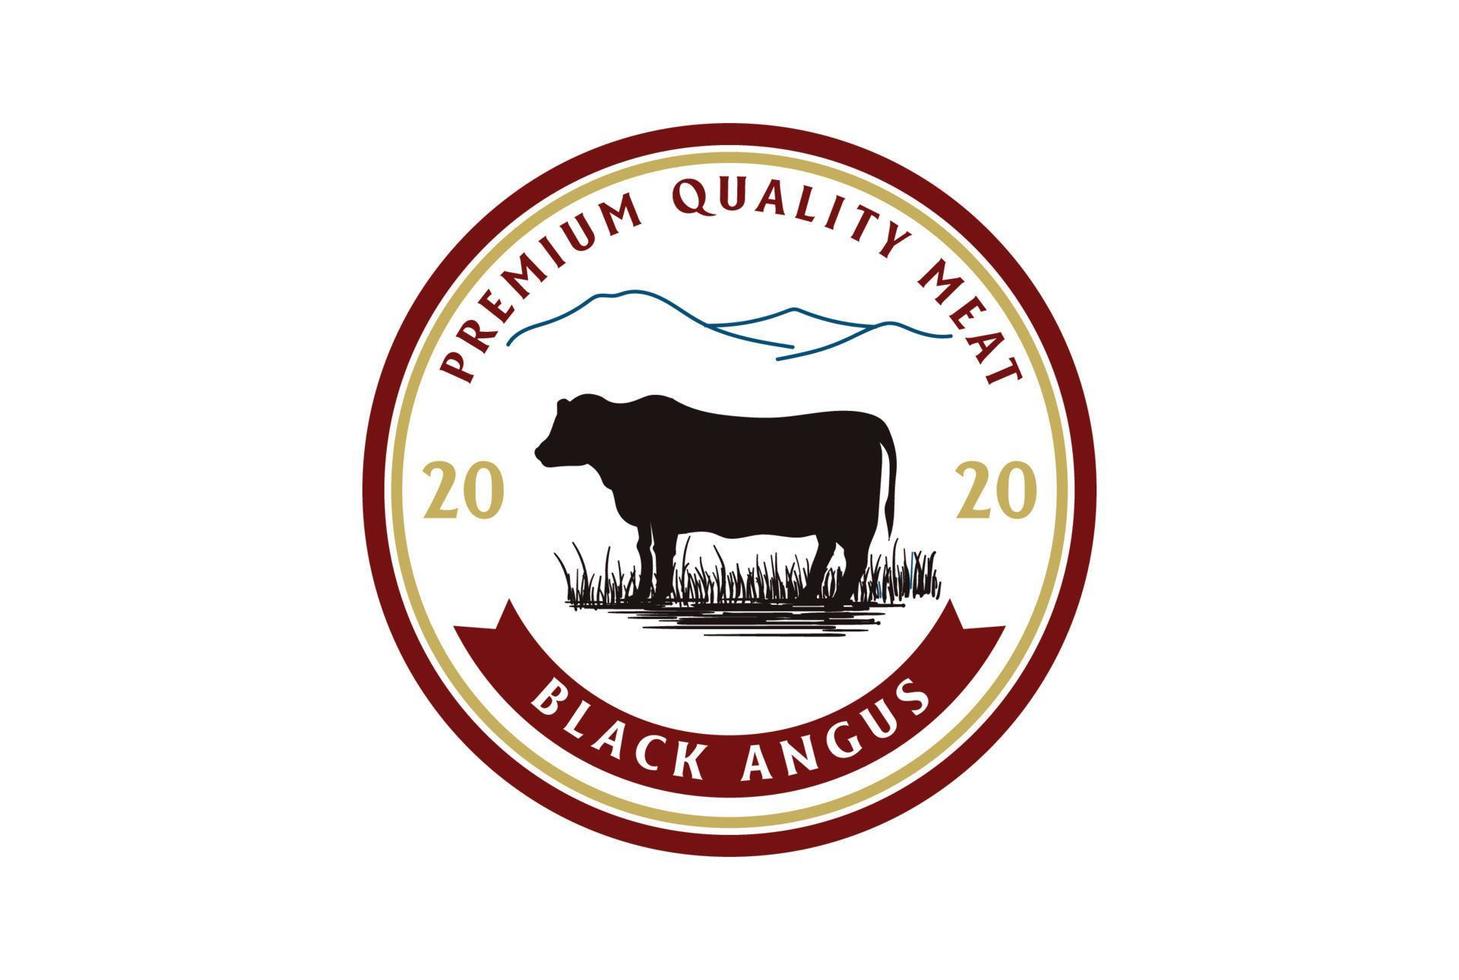 Vintage Black Angus Cow Cattle Farm Livestock for Beef Badge Emblem Label Logo Design Vector